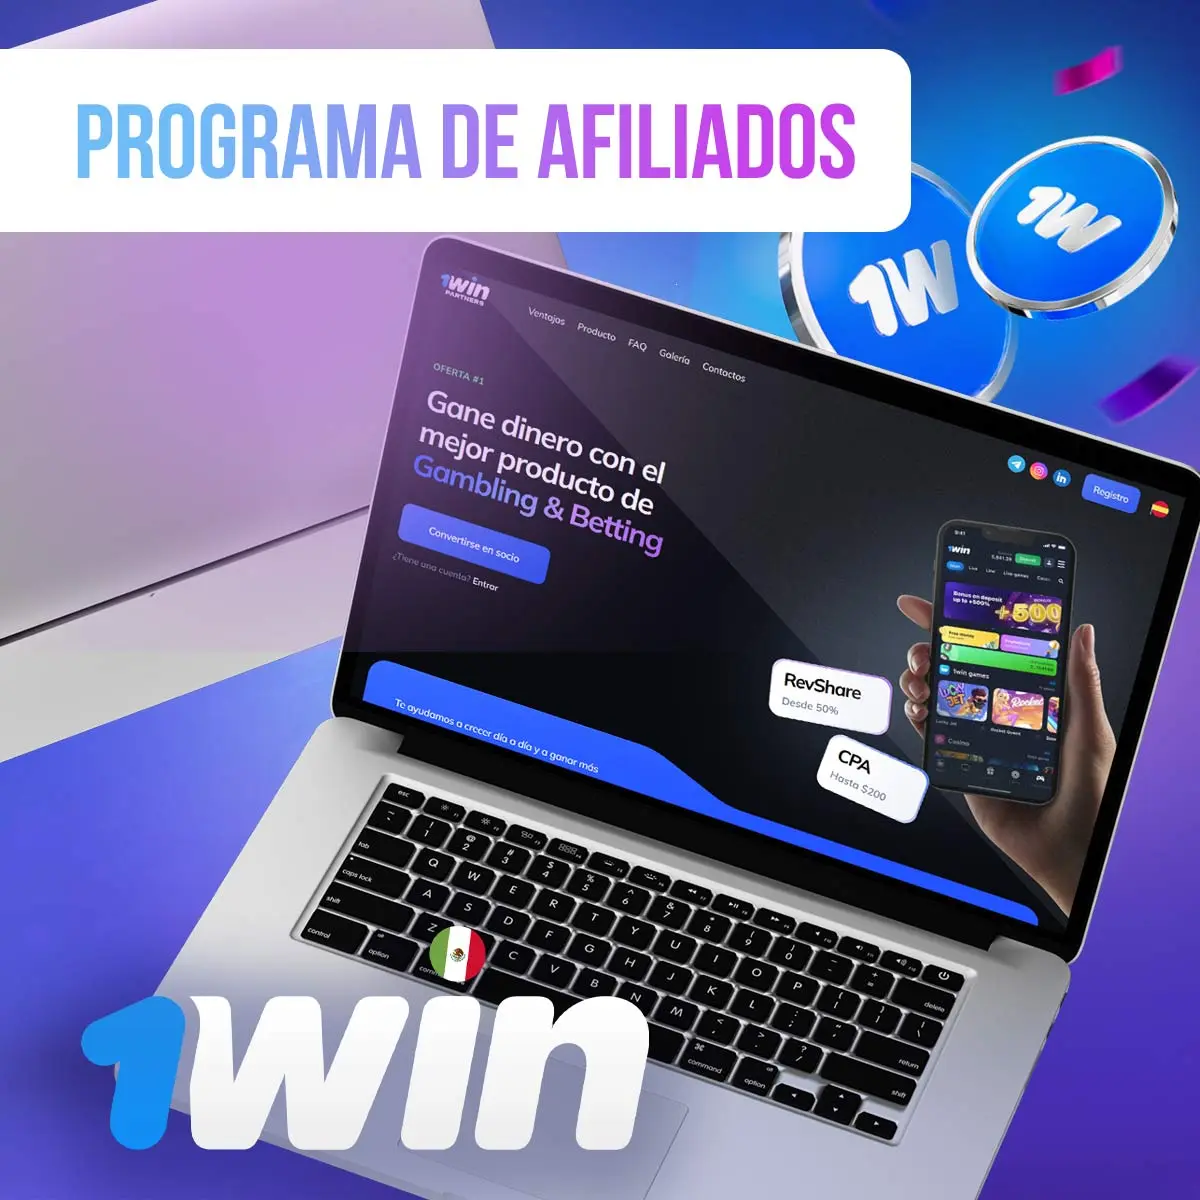 El programa de afiliados de 1win México ofrece una serie de ventajas